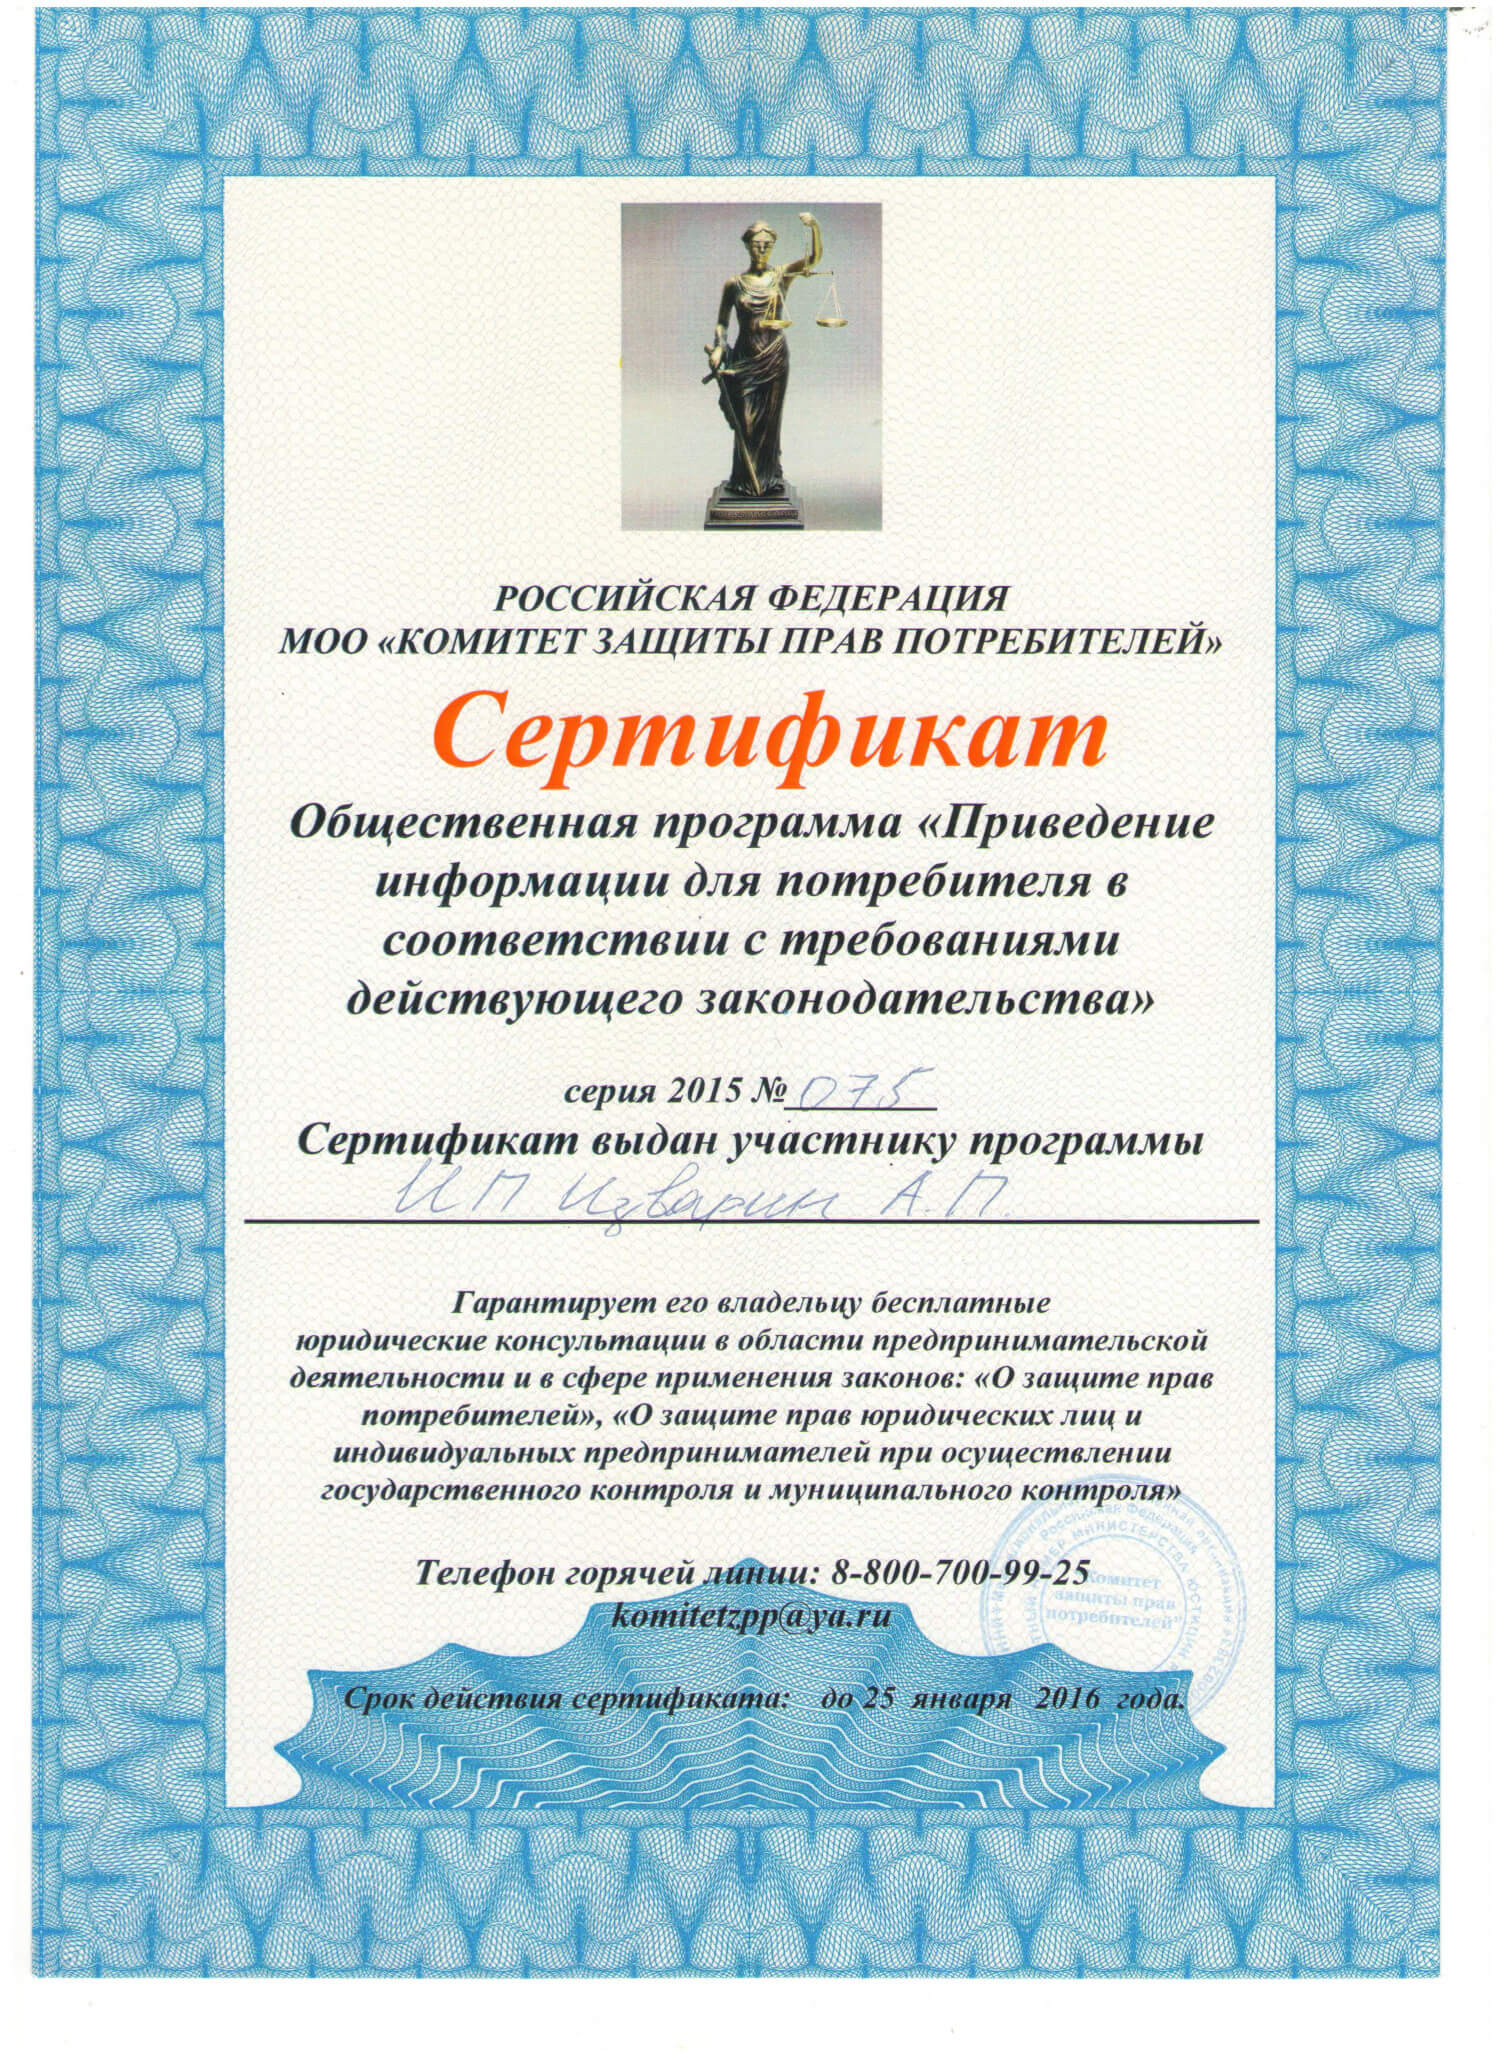 Сертификат участника программы от Комитета защиты прав потребителей